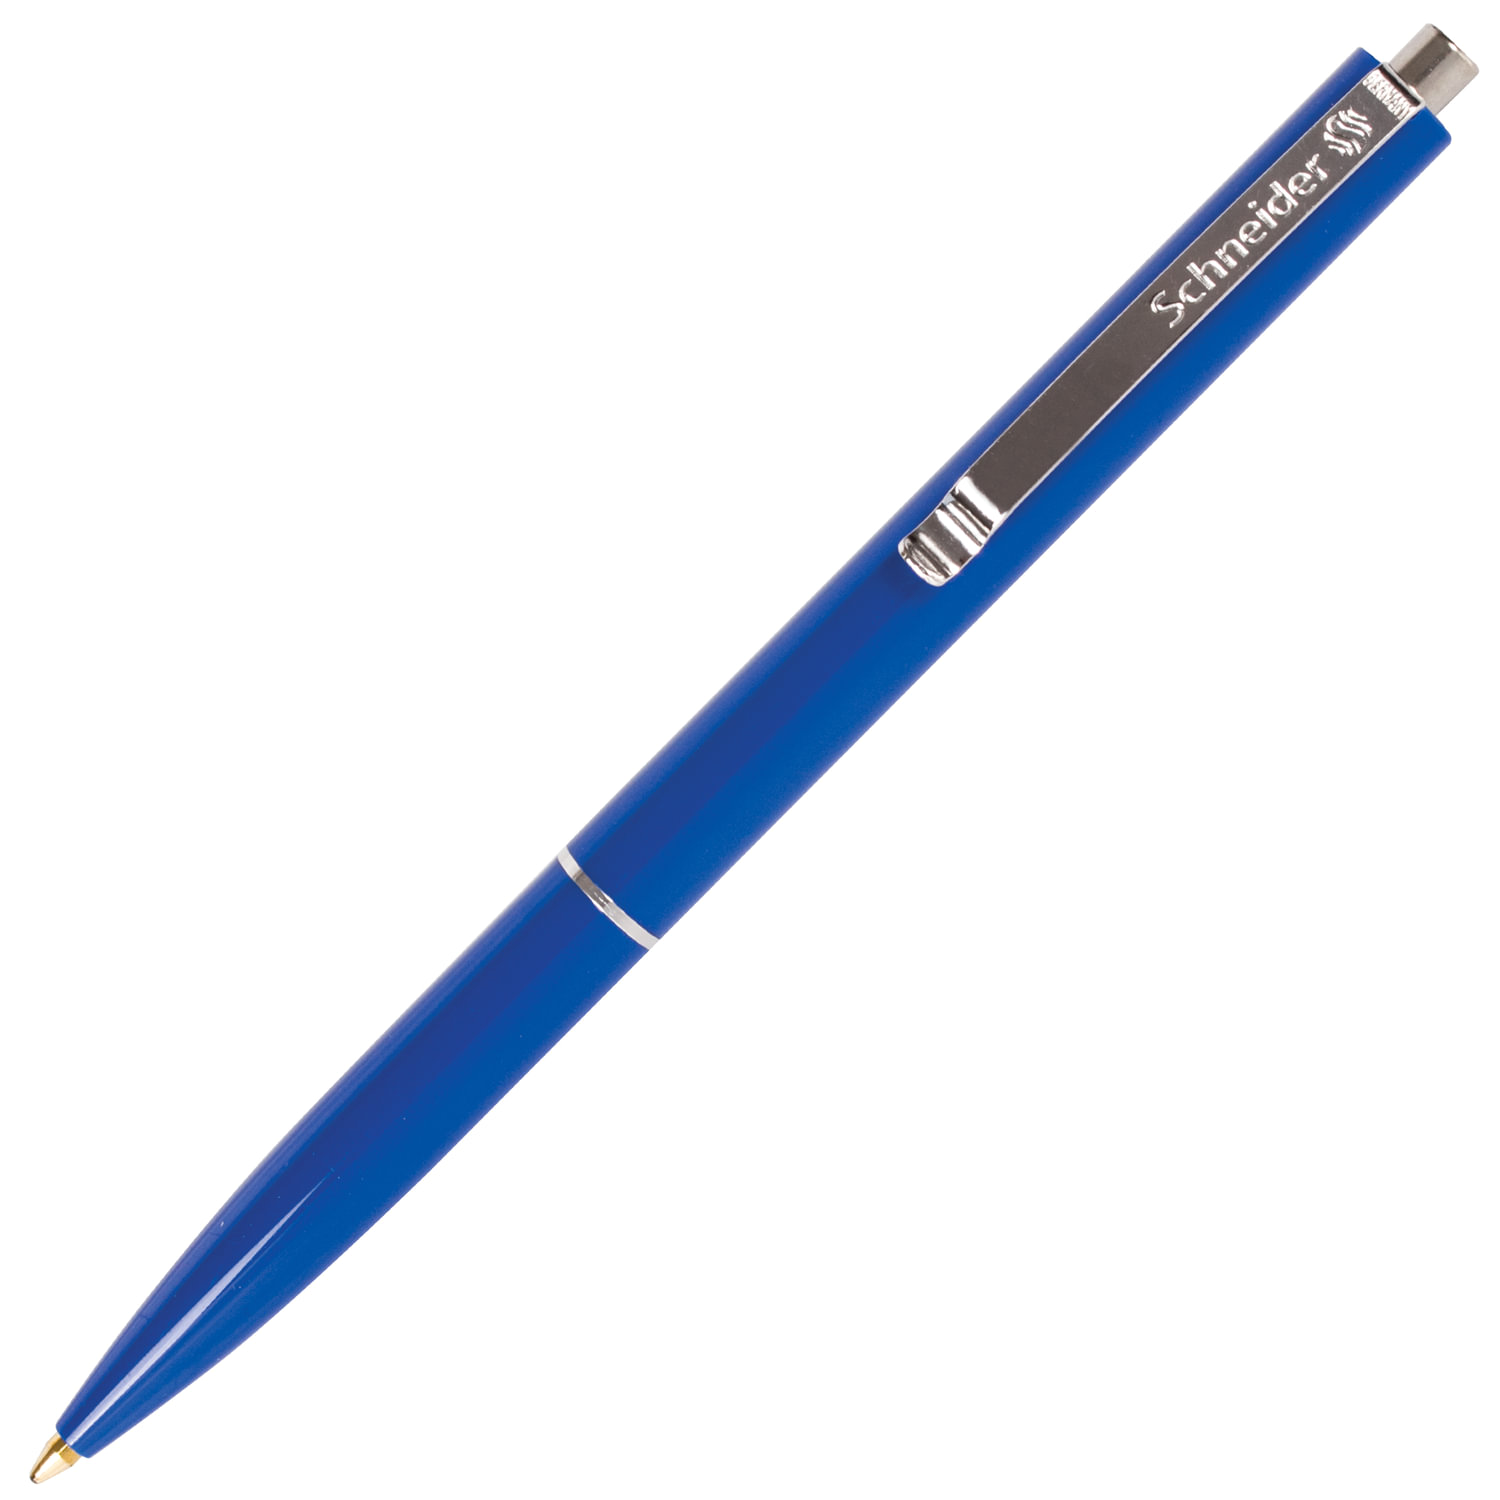 Письма 0 5 мм. Ручка автоматическая Schneider k15 синяя. Ручка шариковая автоматическая Schneider k15. Ручка Шнайдер к15. Ручка шариковая автоматическая Schneider k15 синяя.